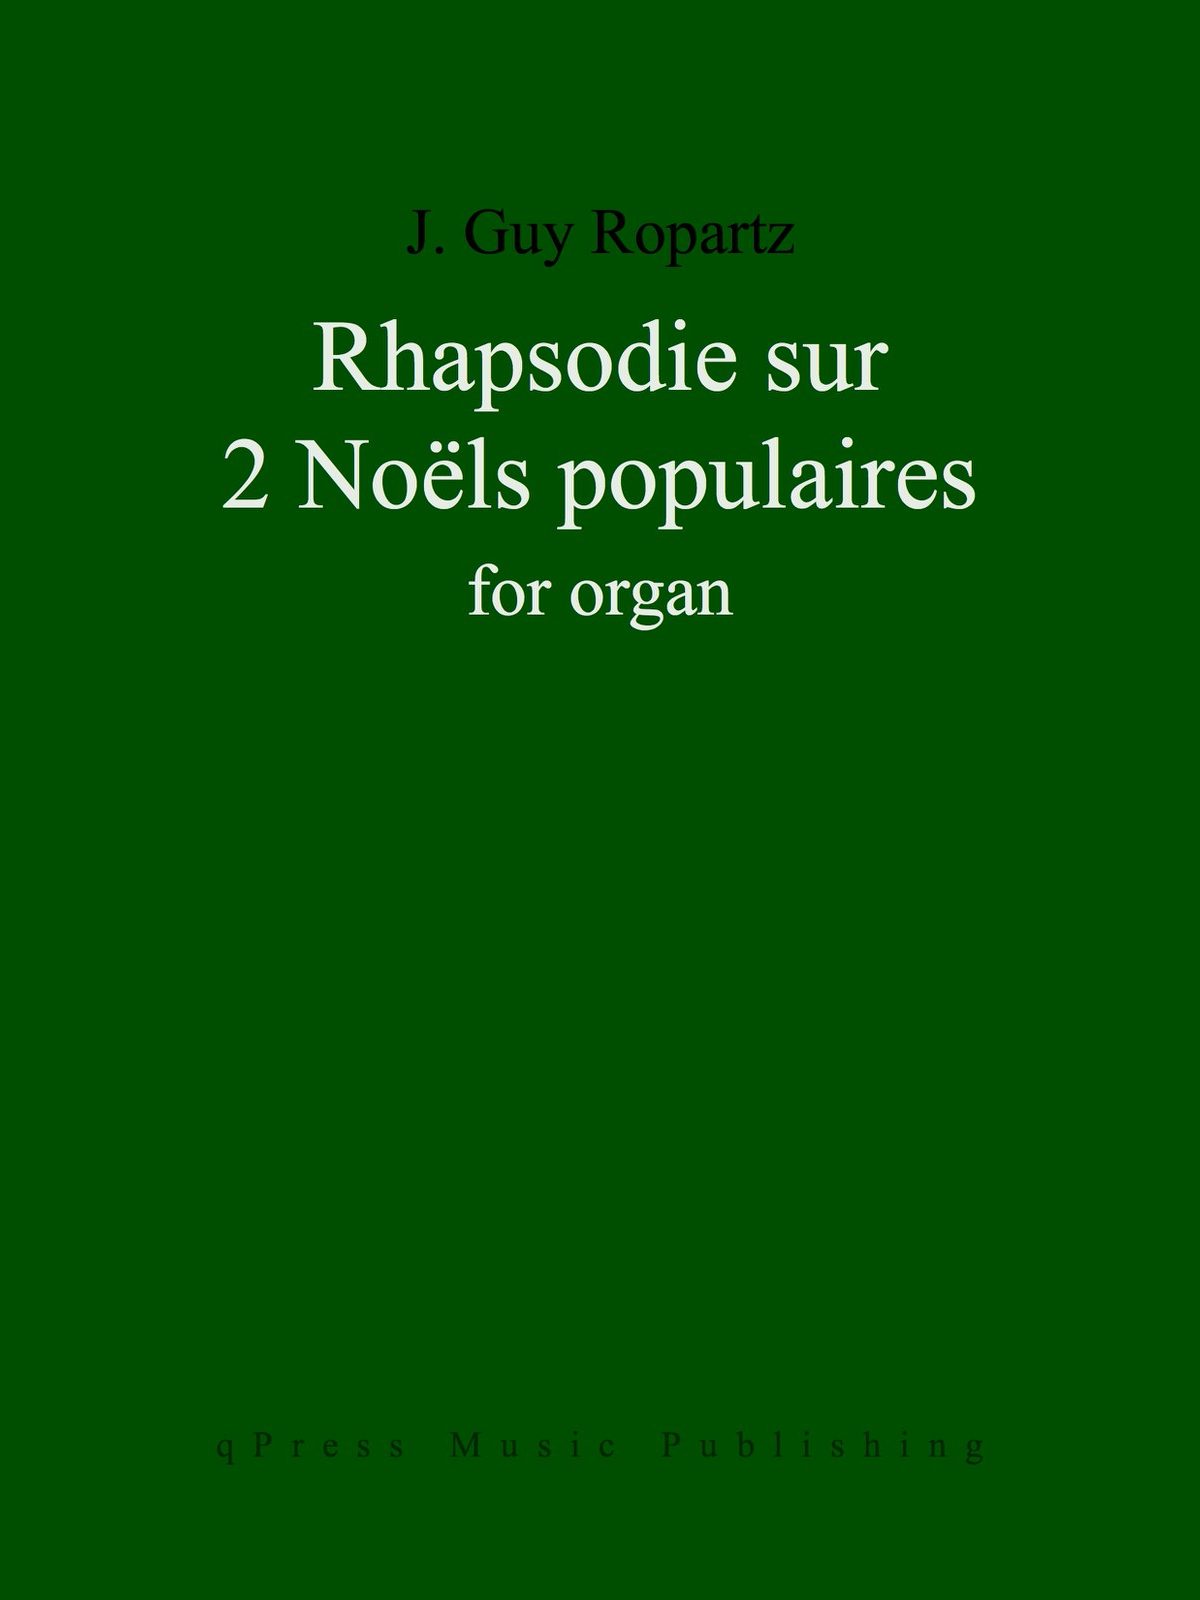 Ropartz, Rhapsodie sur 2 Noëls populaires de la Haute-Bretagne for Organ-p01